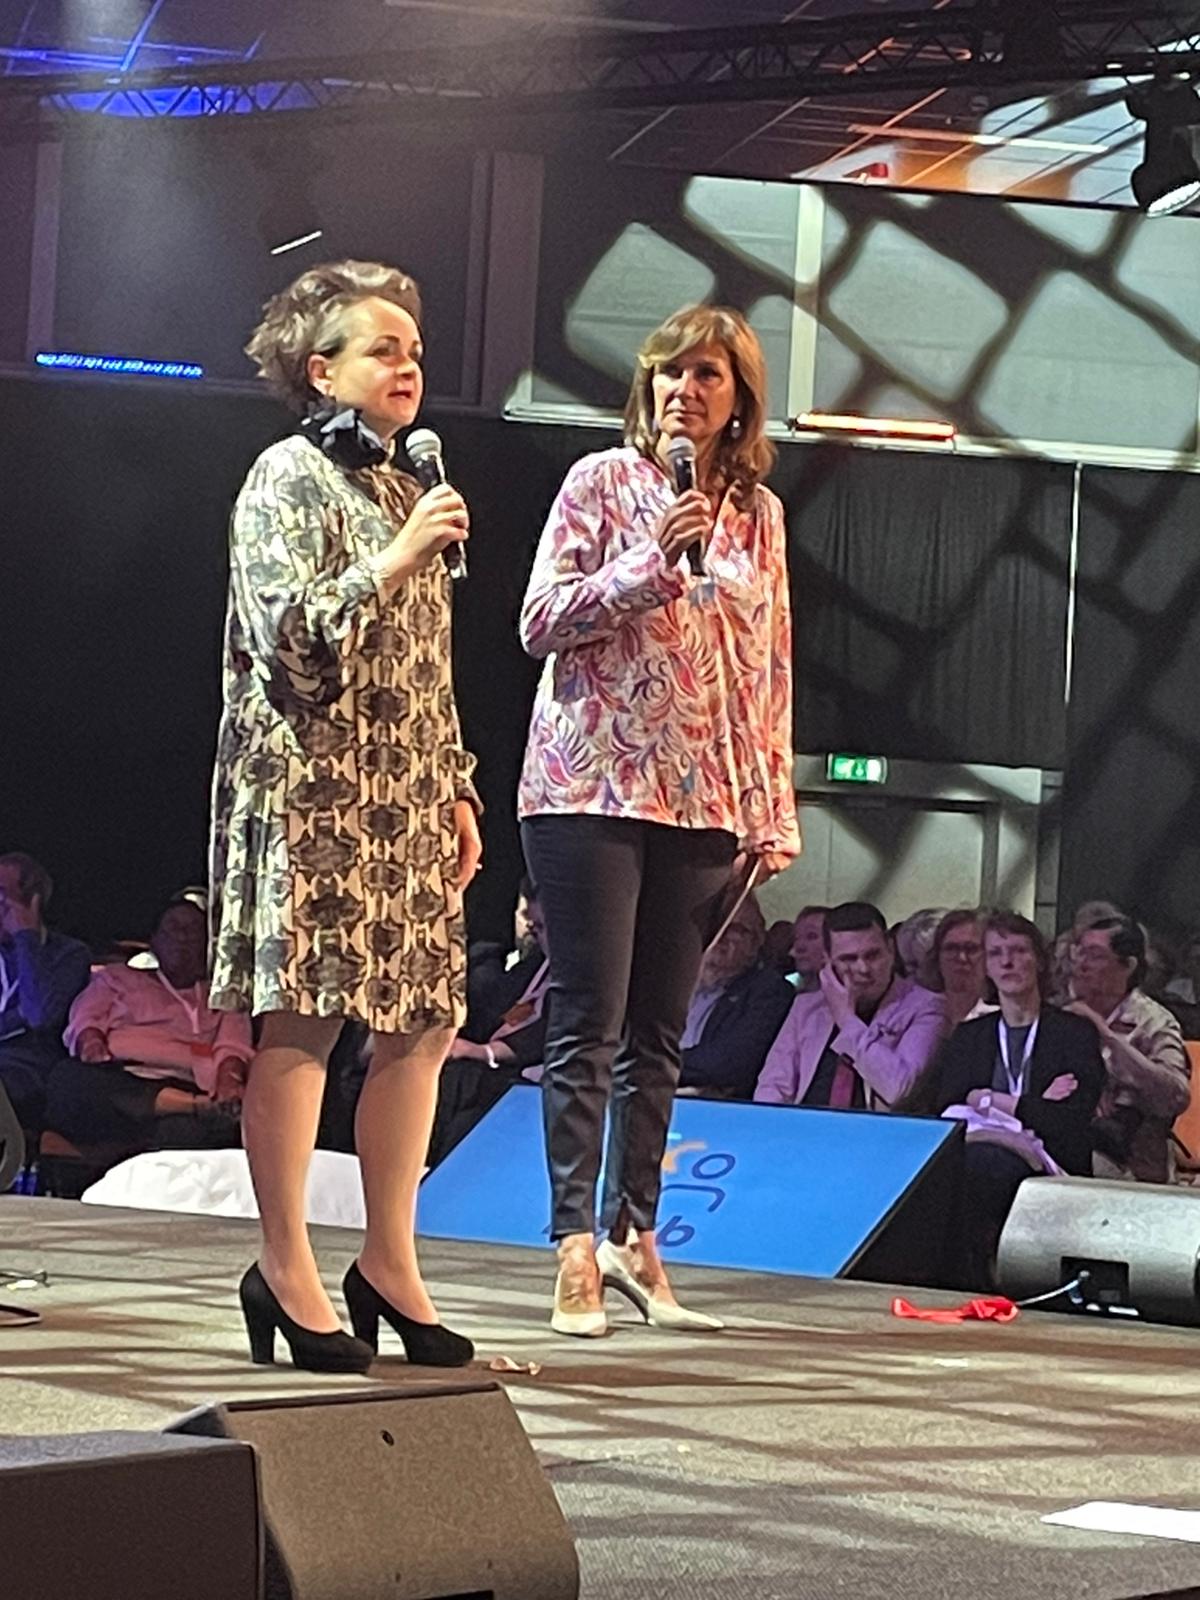 Alexandra van Huffelen staat op een podium naast Astrid Joosten. Beiden hebben een microfoon in de hand. 